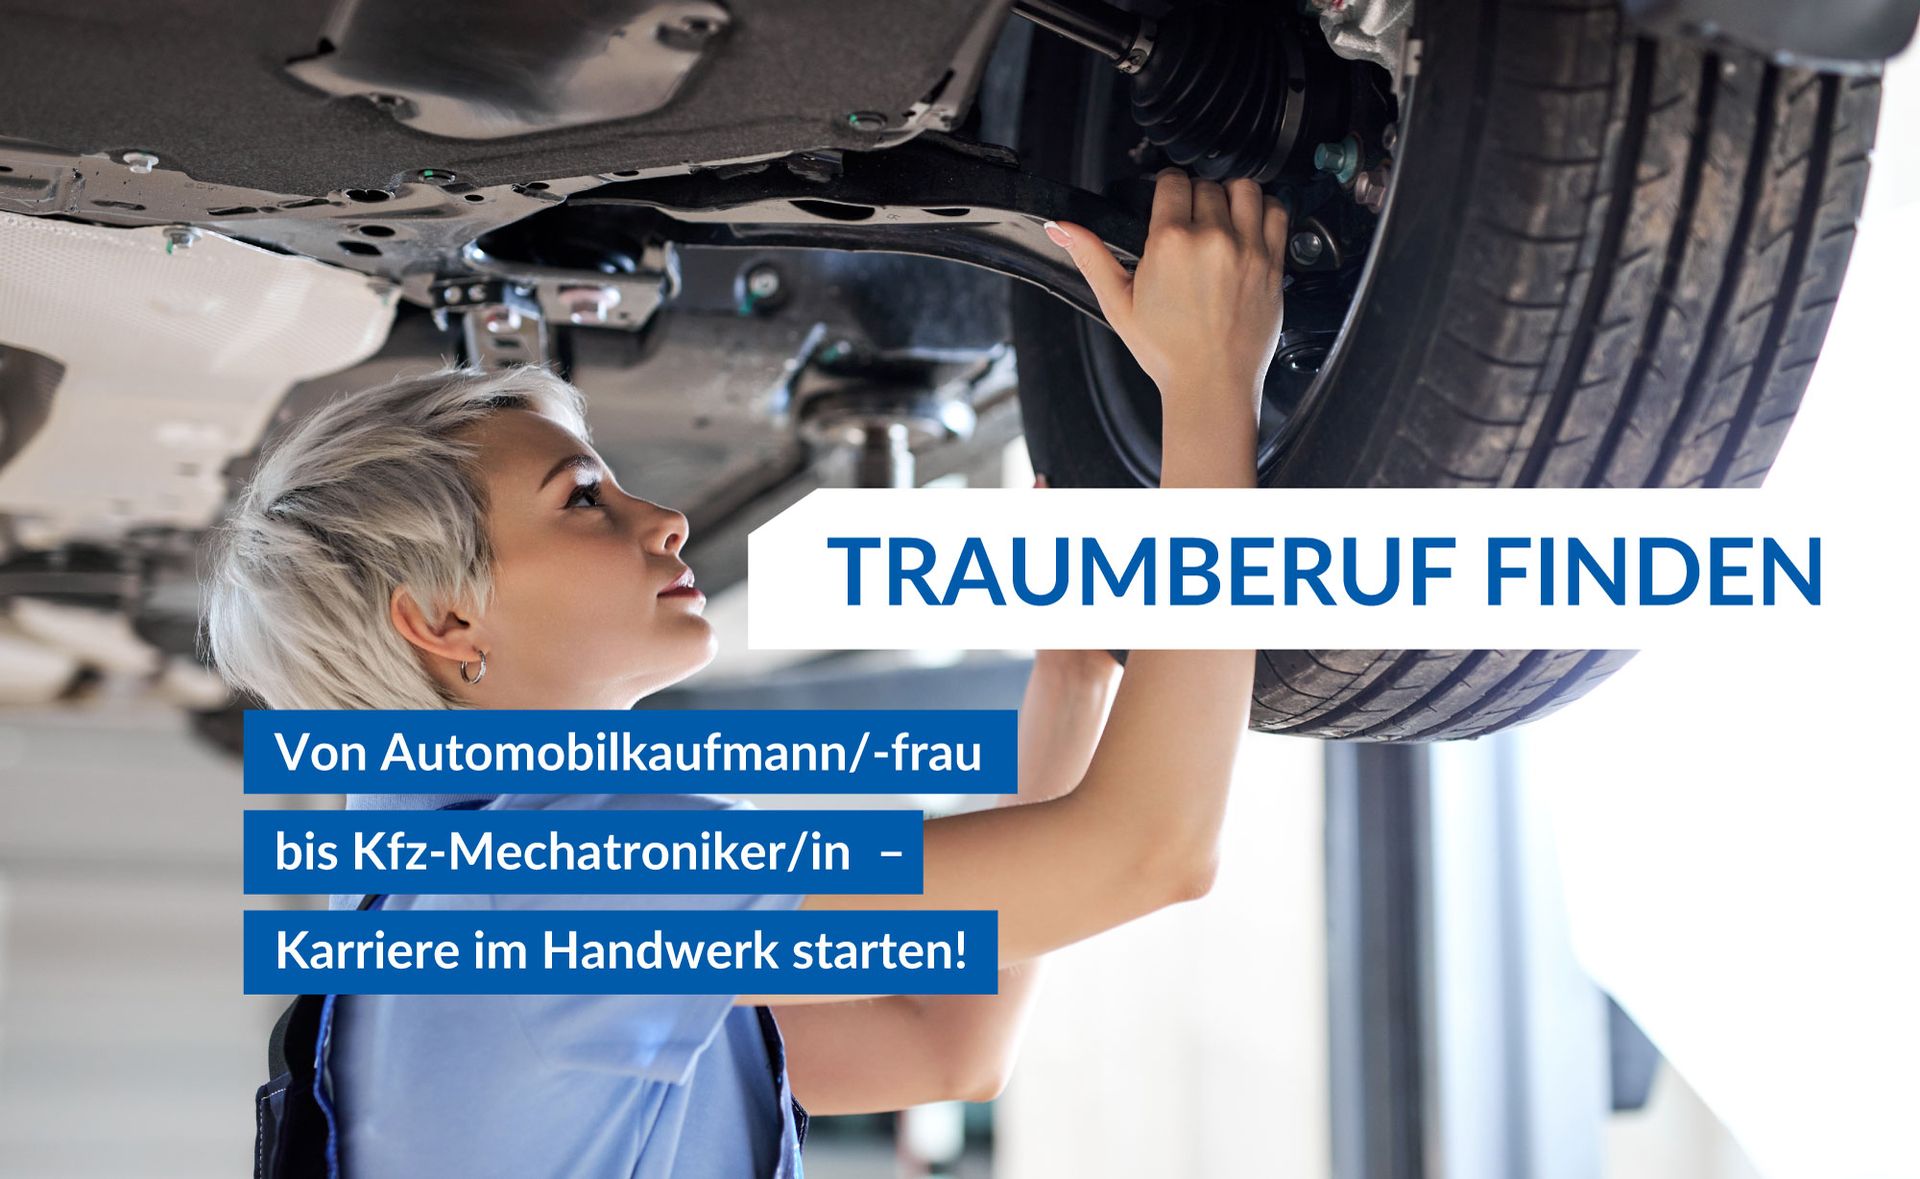 Traumberuf finden von Automobilkaufmann/-frau bis Kfz-Mechatroniker/-in – Karriere im Handwerk starten!